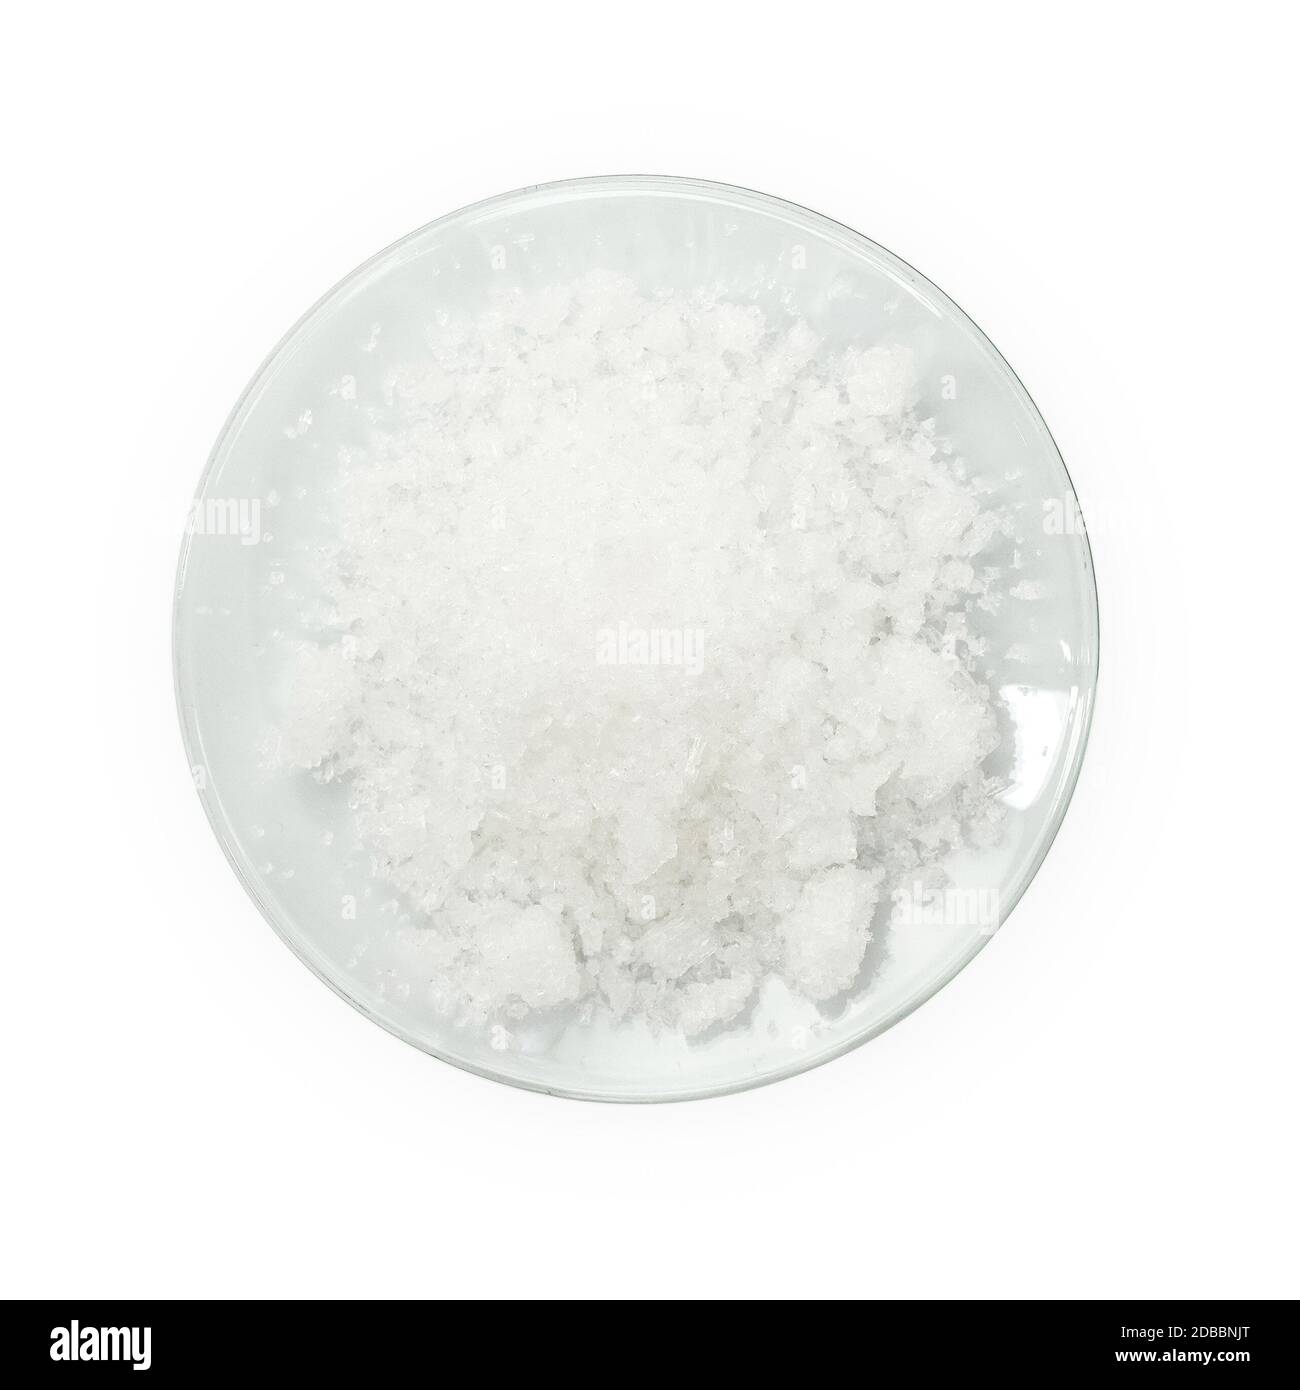 Cloruro de potasio (KCl), una sal de haluro metálico compuesta de potasio y cloro. El KCl se utiliza como fertilizante, en medicina, en aplicaciones científicas Foto de stock